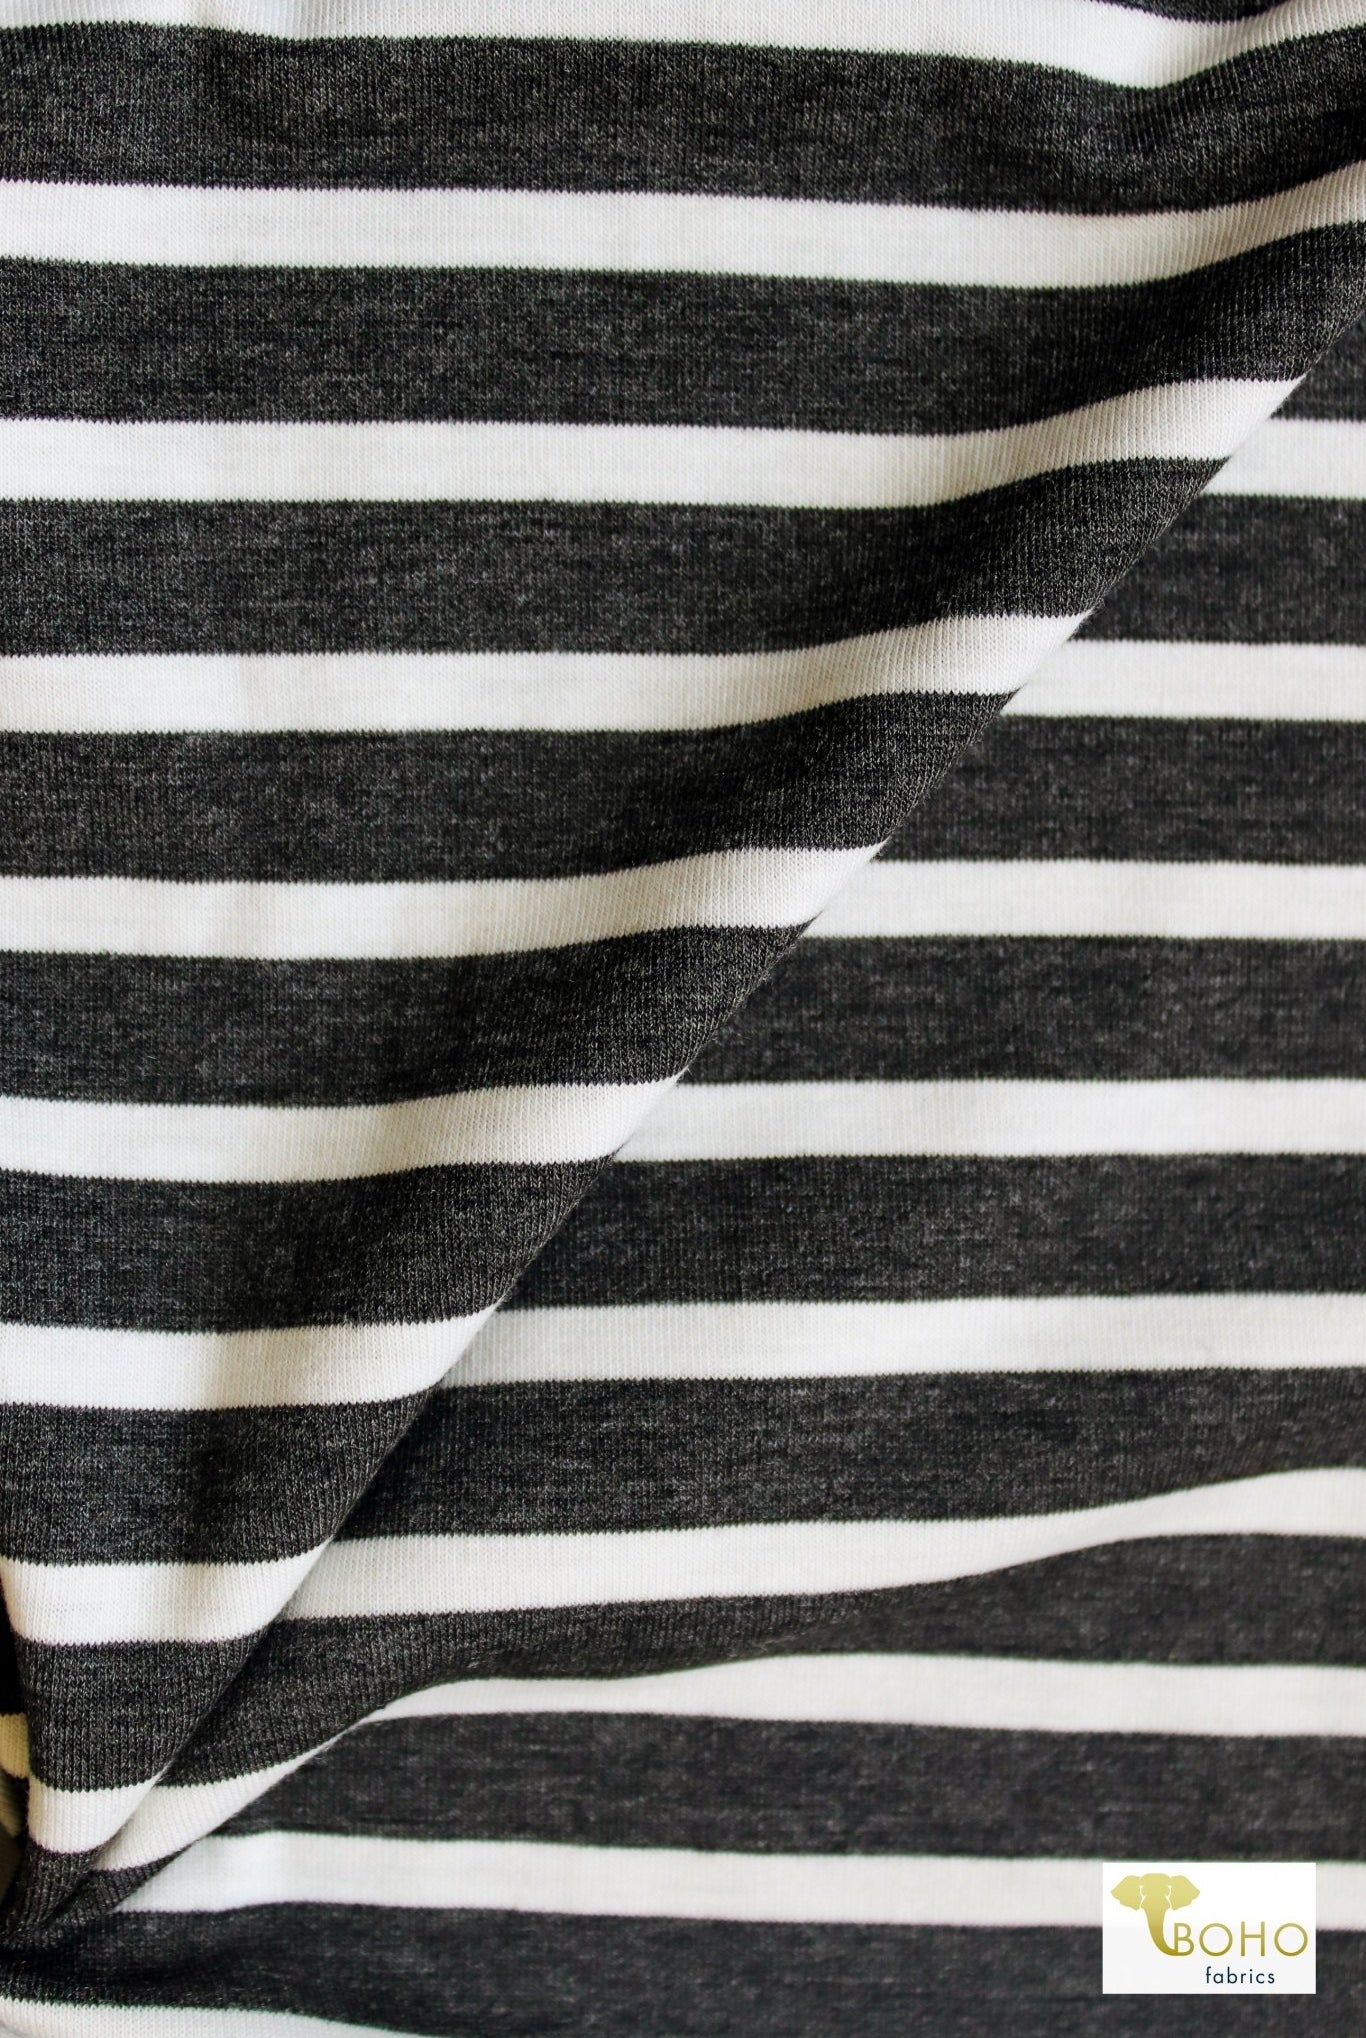 Tap Shoe Stripes, Jersey Knit - Boho Fabrics